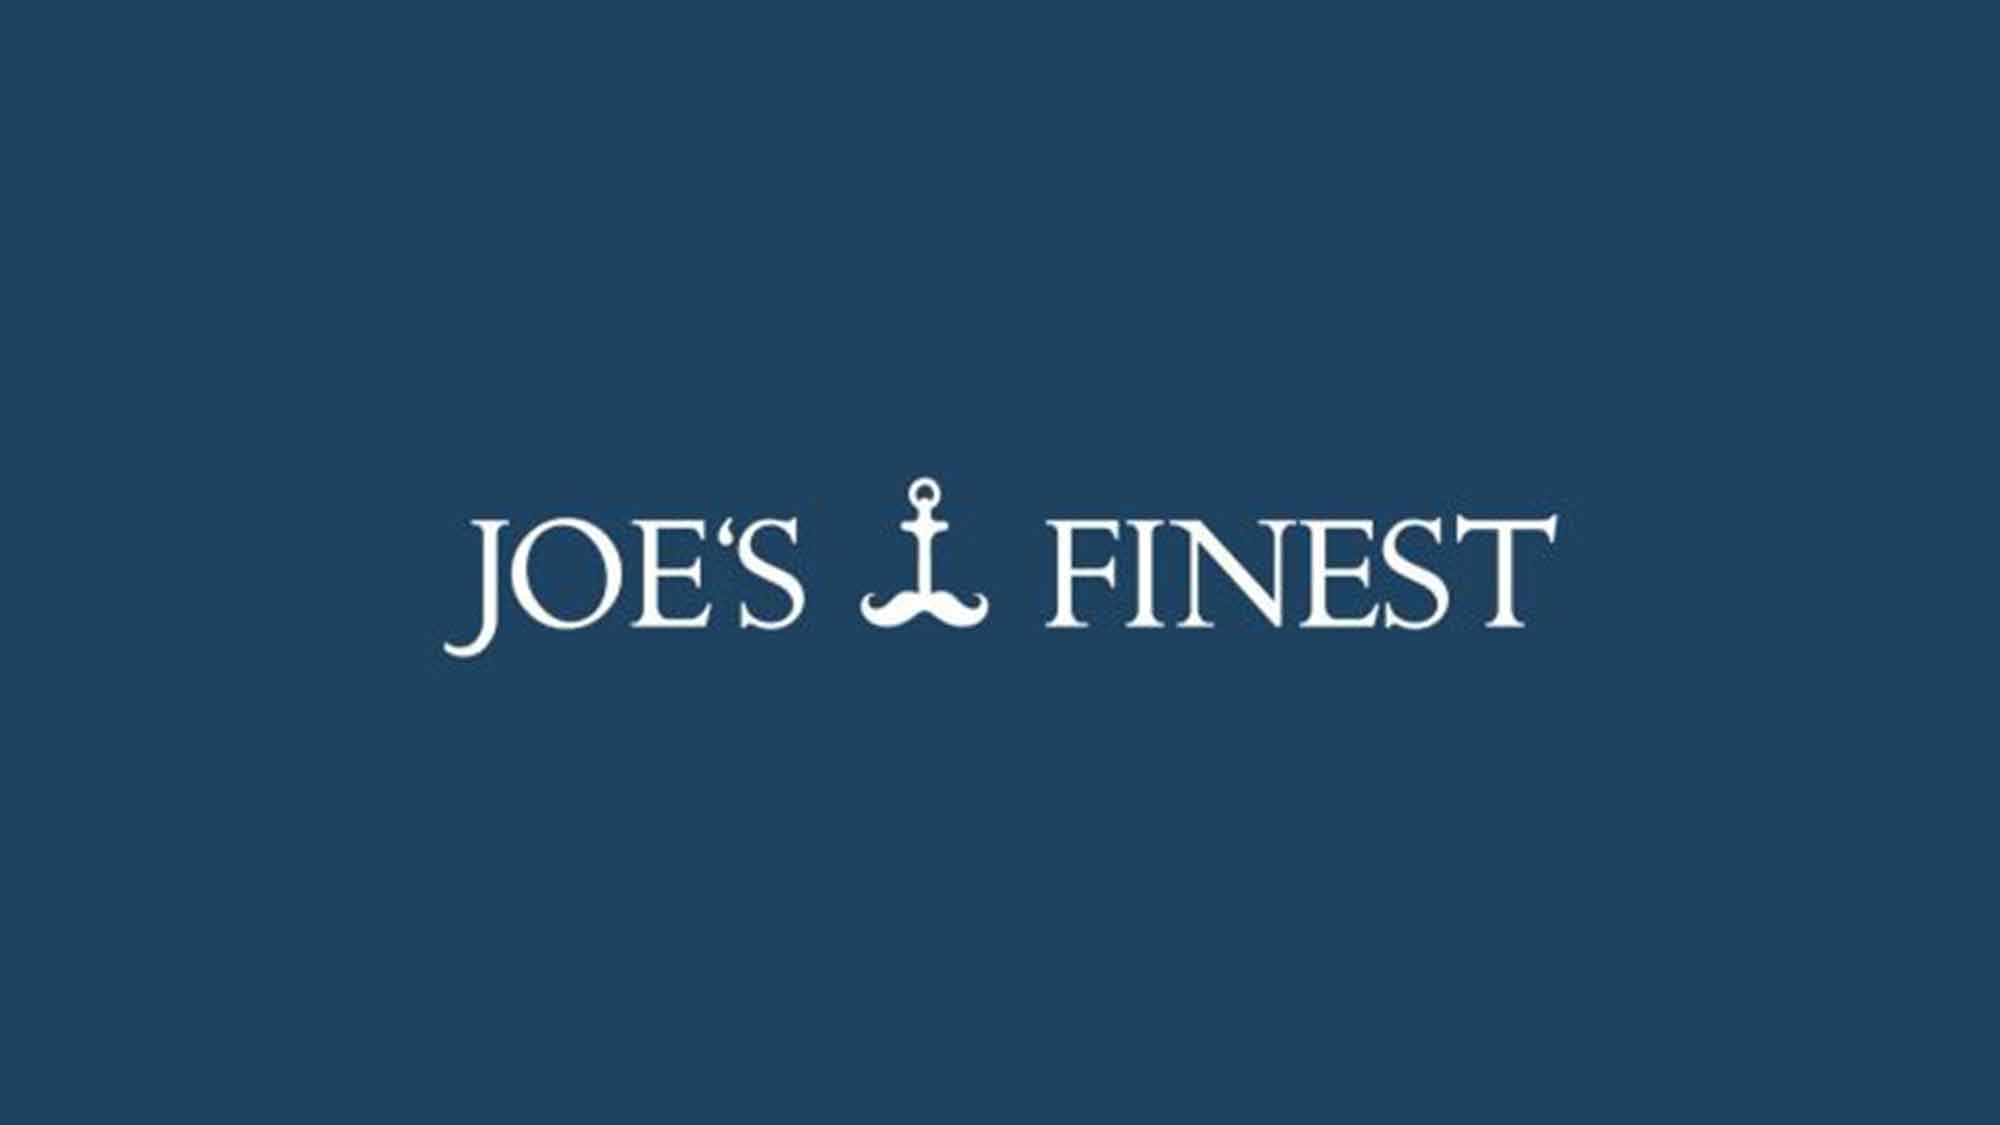 Stärkerer Bartwuchs garantiert: Joe’s Finest bietet Qualitätsversprechen mit Geld zurück Garantie